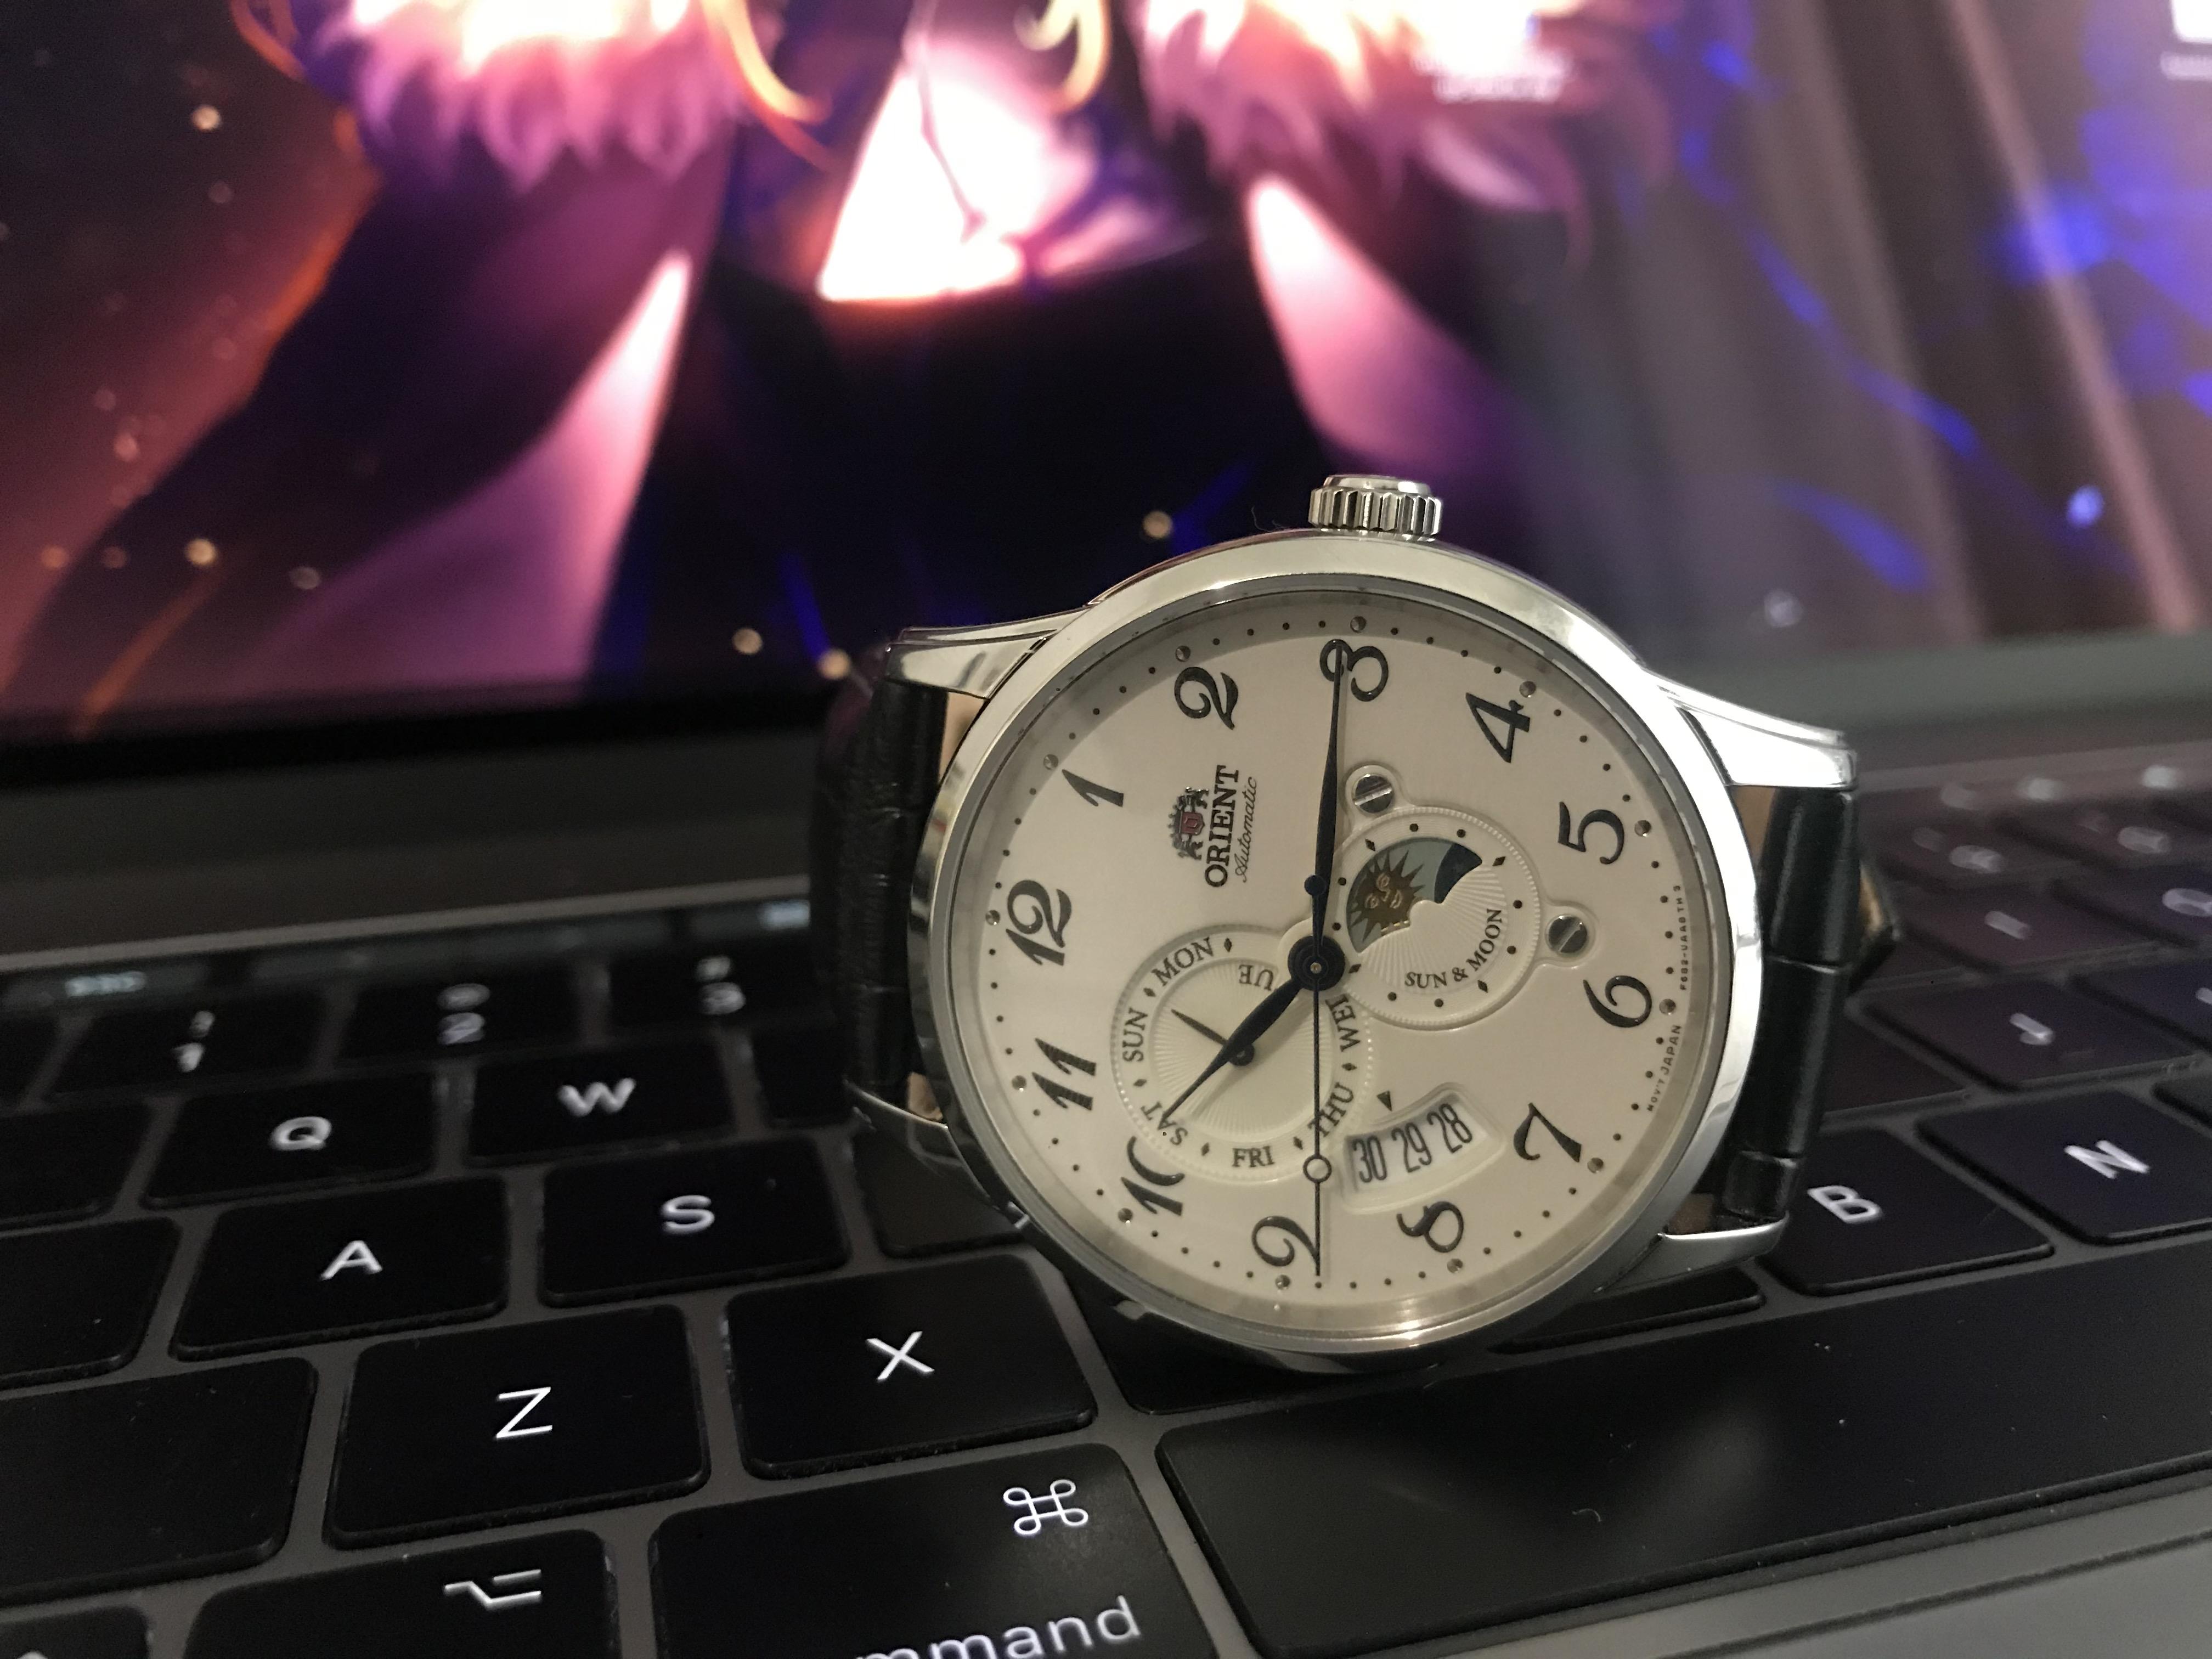 Tìm ra chiếc đồng hồ nổi bật khi so sánh đồng hồ Seiko và Orient?